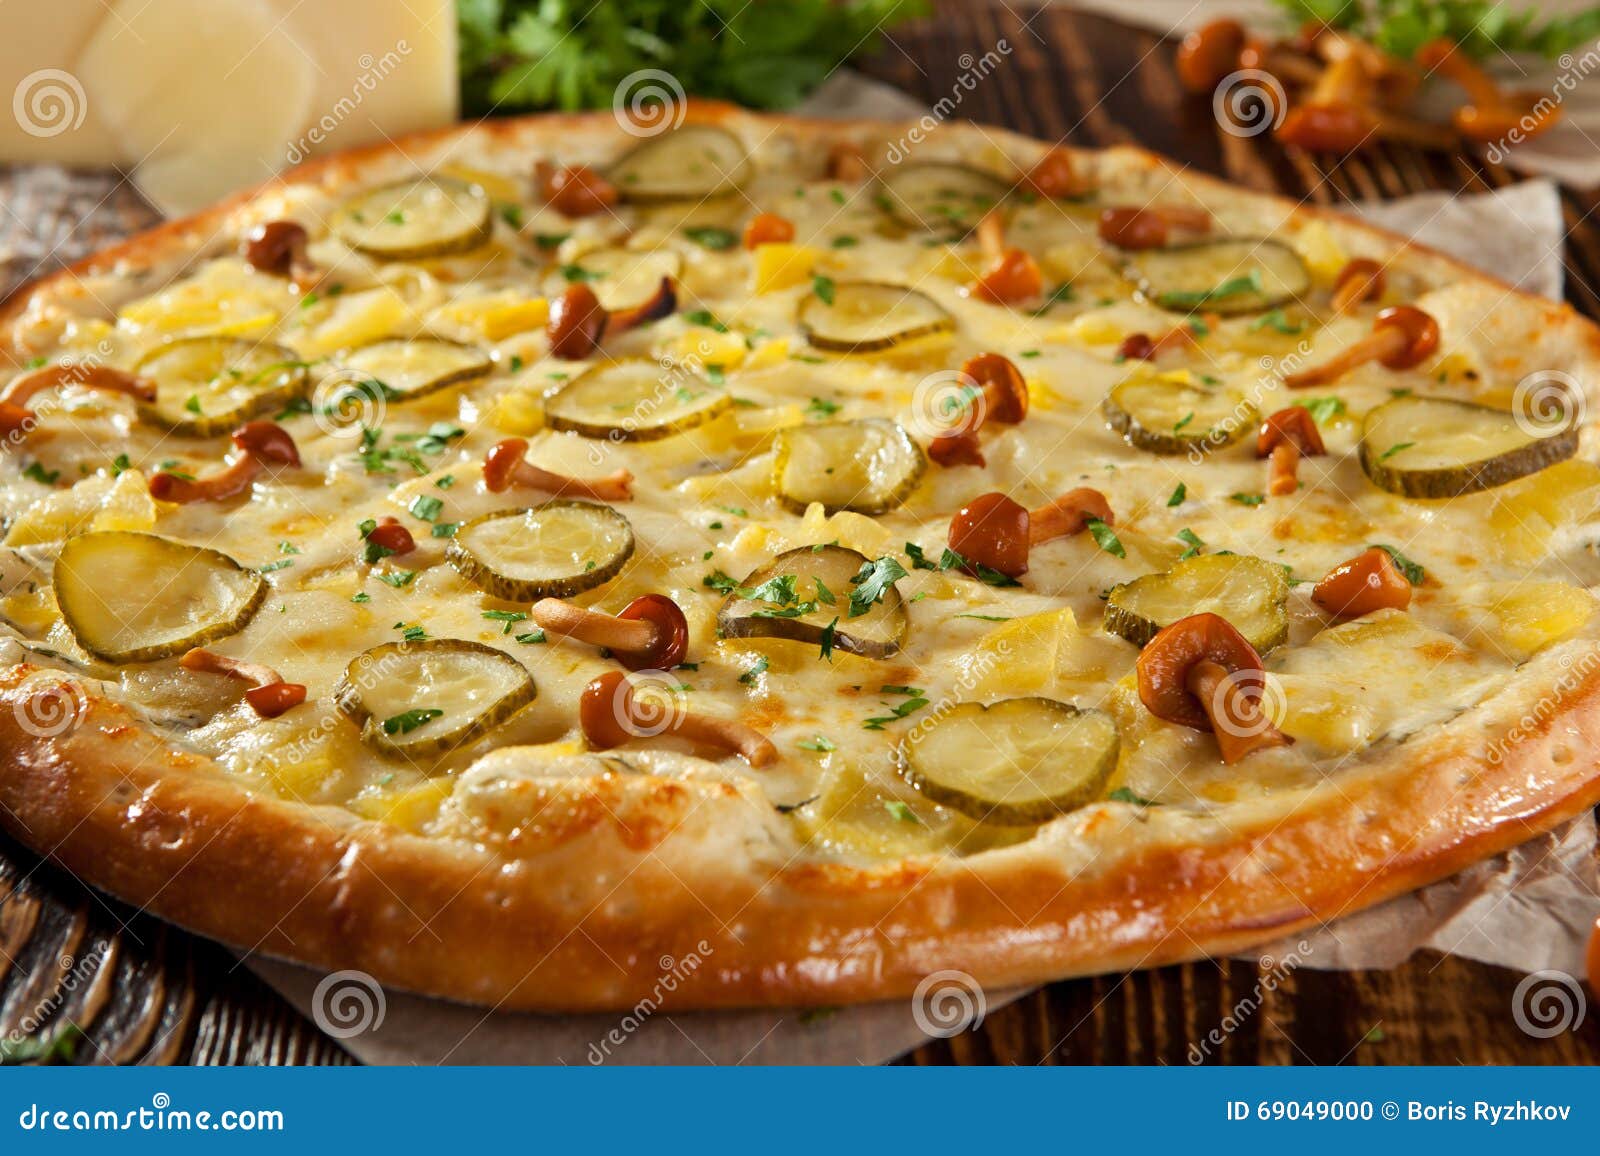 пицца грибная рецепт с опятами фото 9